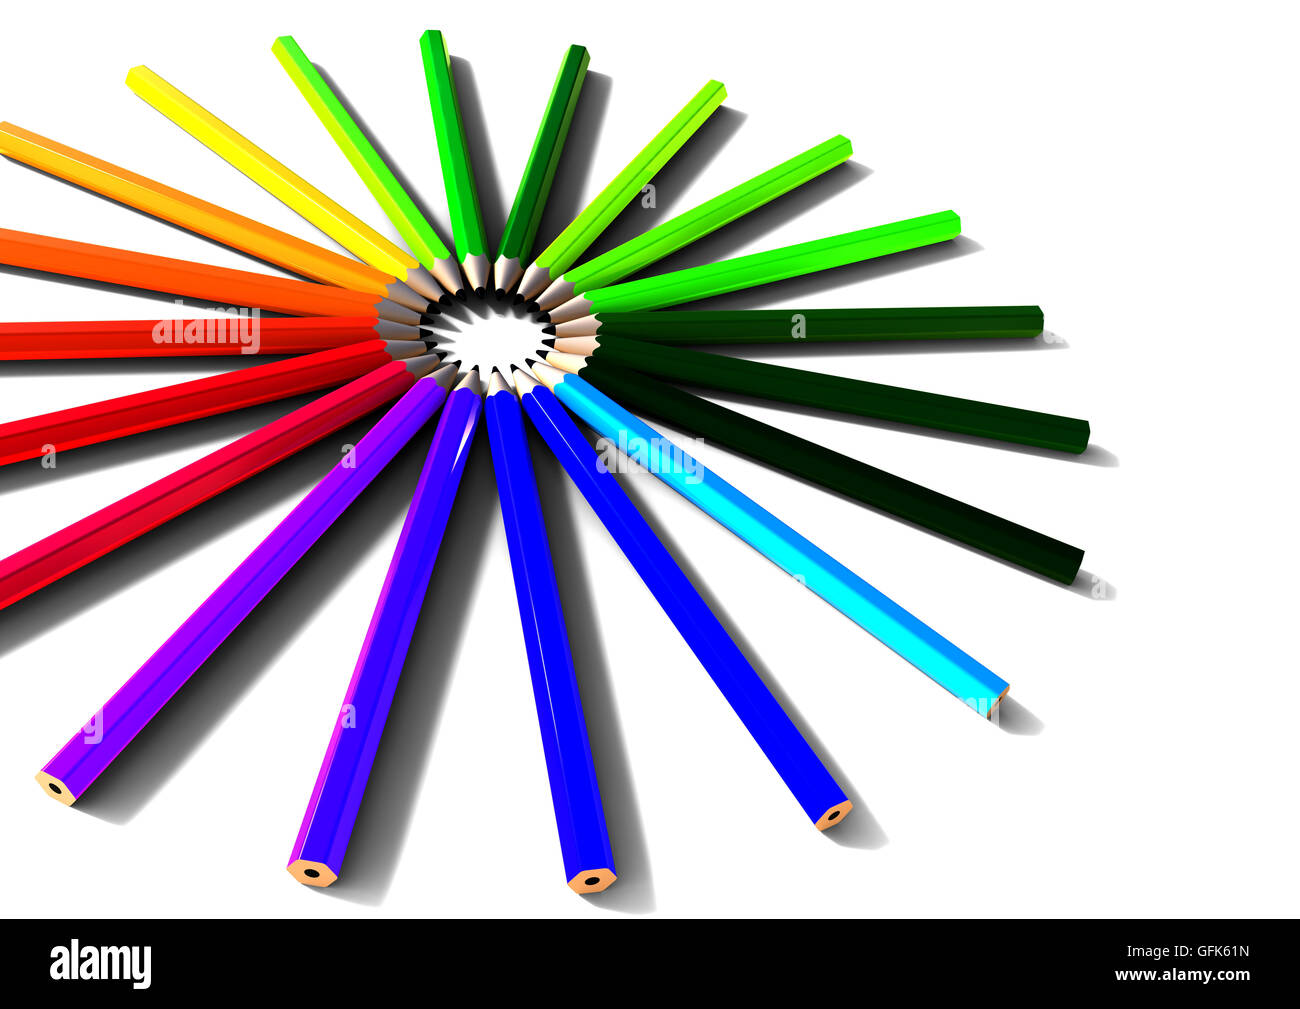 3D Render-Bild, das einen Kreis von Farbstiften darstellt Stockfoto